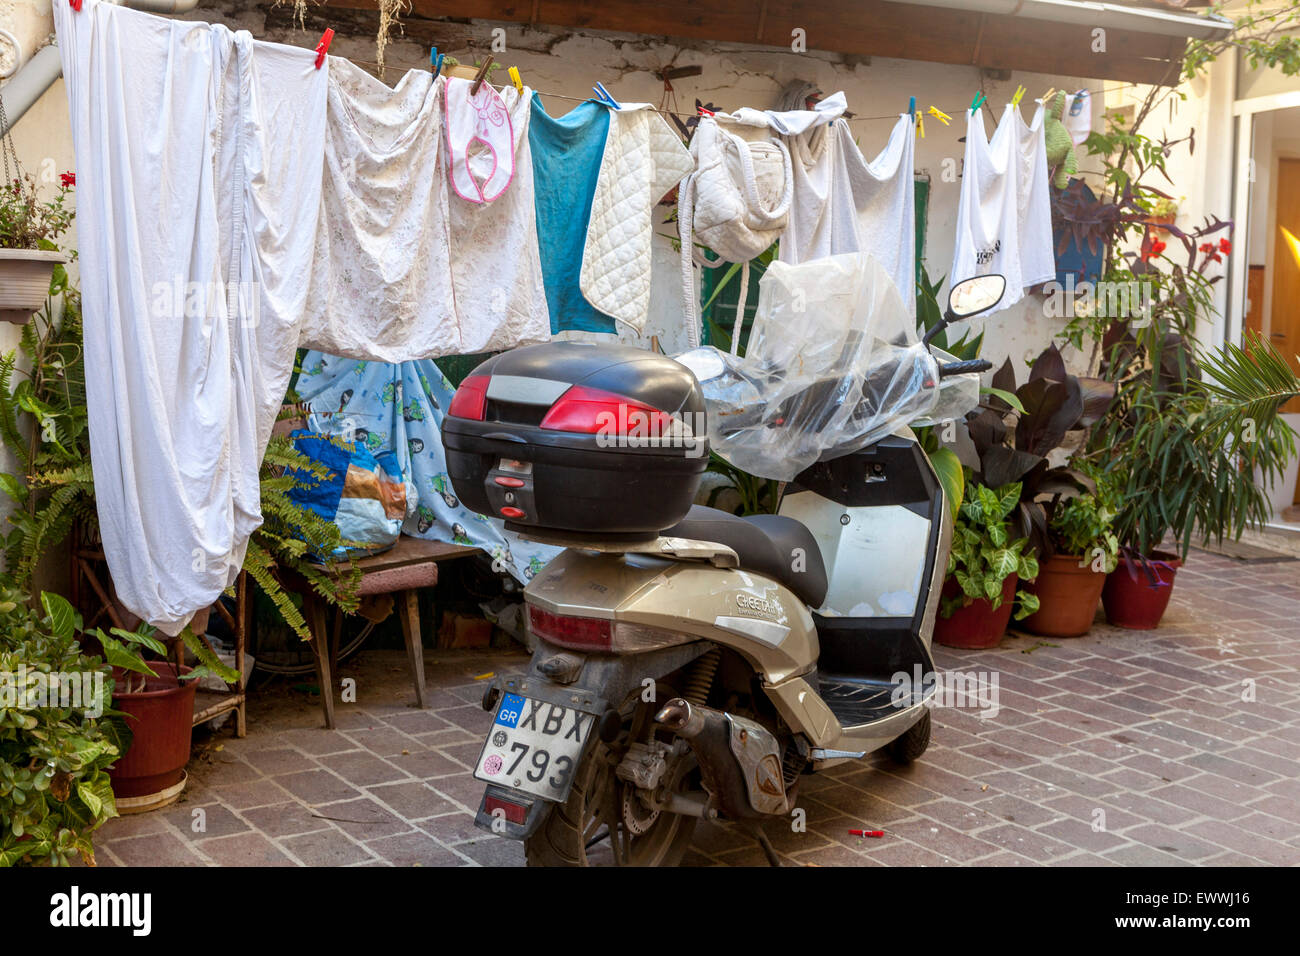 Straße, Chania, Kreta, Griechenland, Europa. Kleidung trocknen Wäsche auf der Wäscheleine trocknen Kleidung Stockfoto